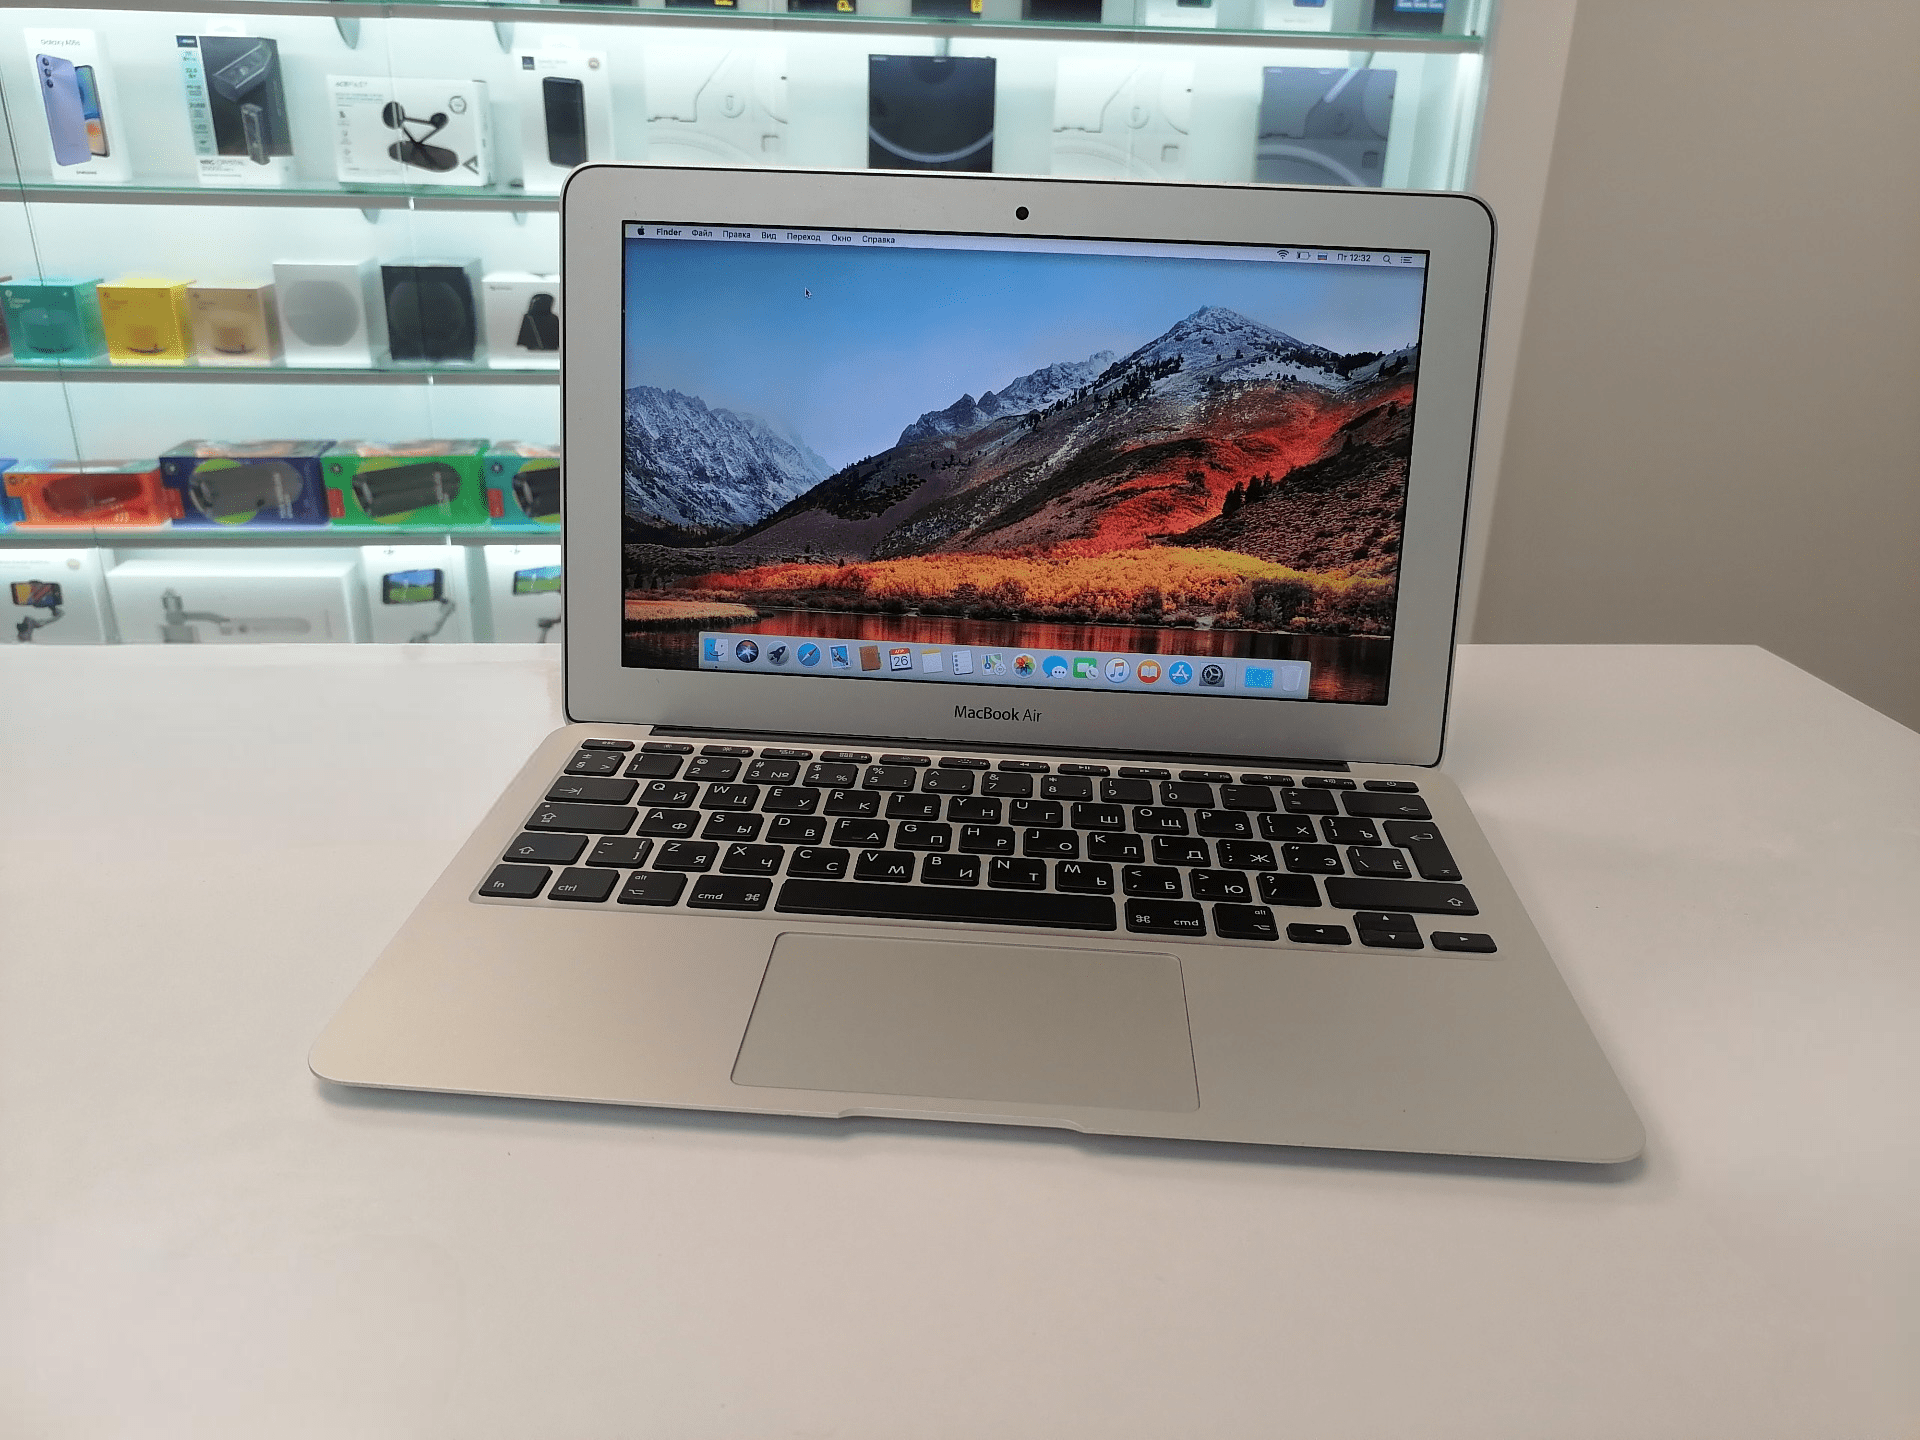 Ноутбук Apple MacBook Air A1465 11,6, Intel Core i5, 1,4ГГц, 8Gb, 128Gb SSD (без коробки) - Б/У 277 циклов